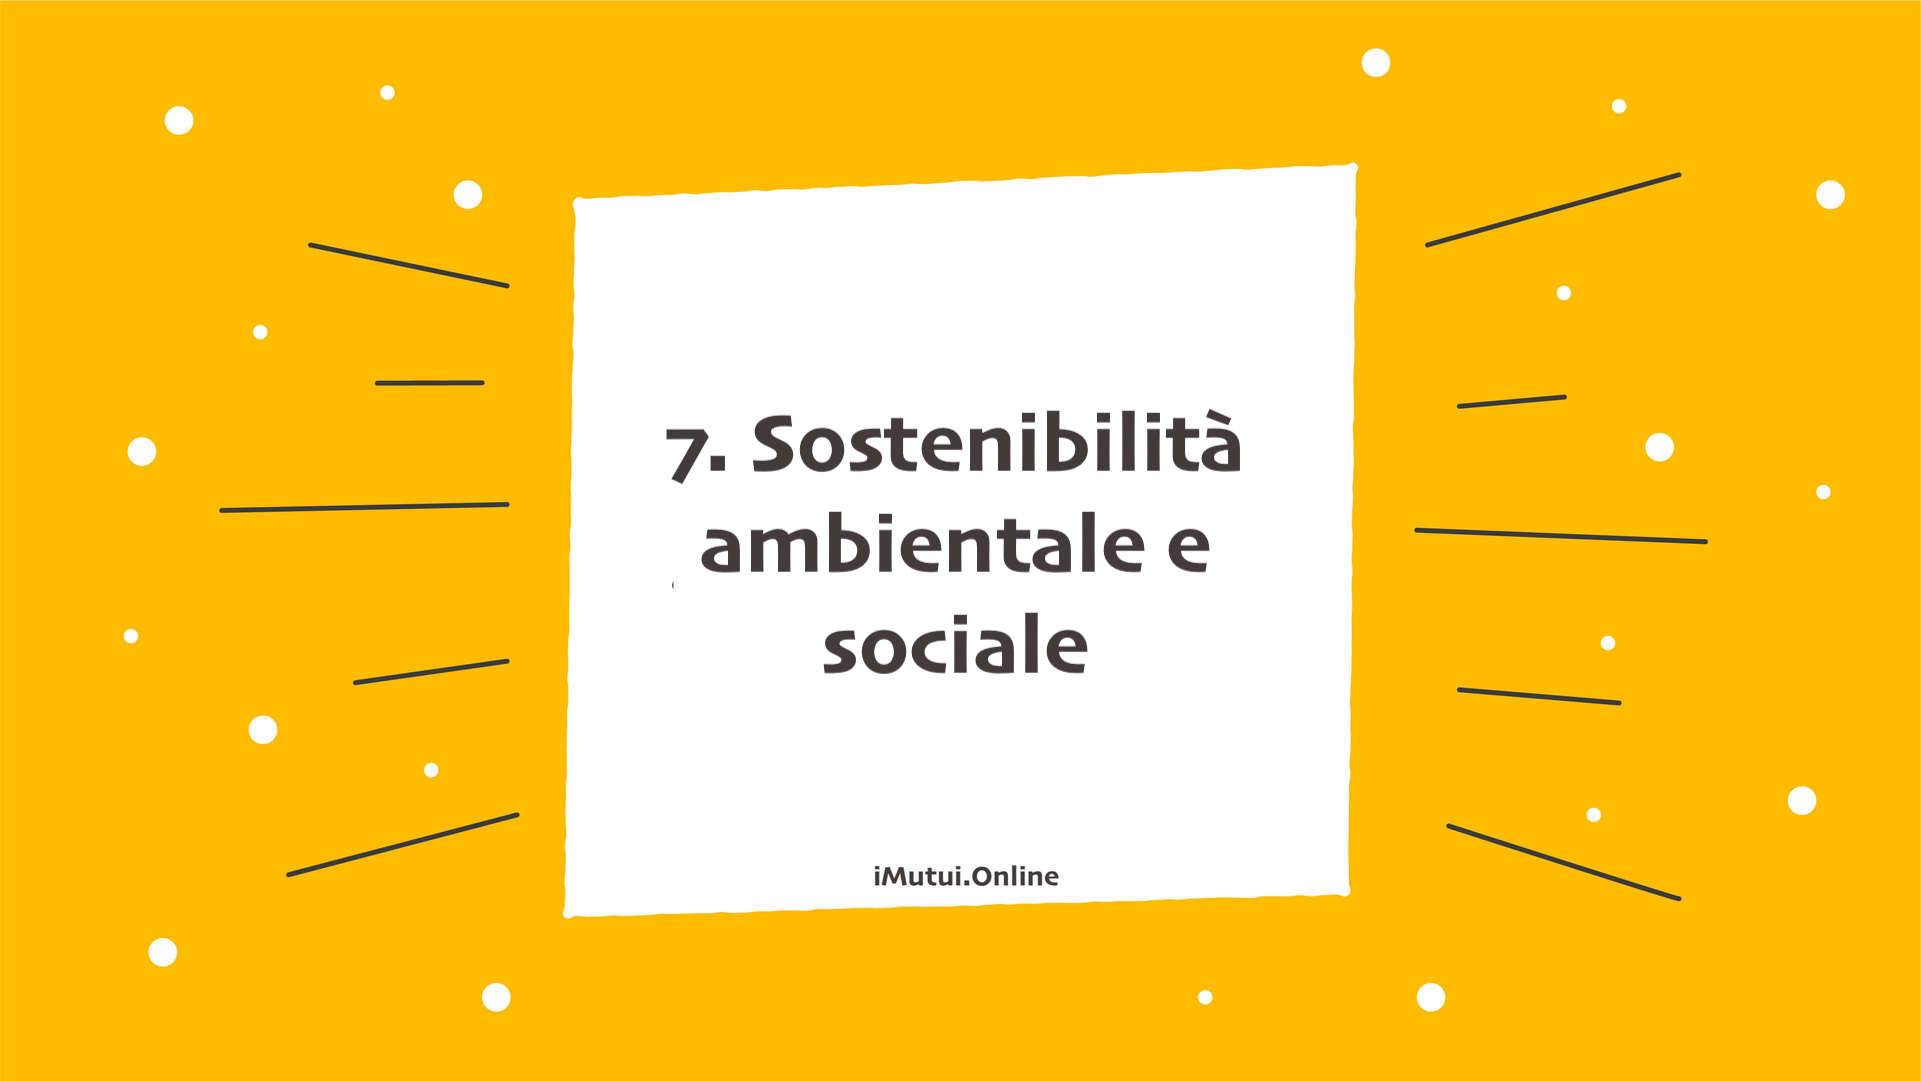 7. Sostenibilità ambientale e sociale